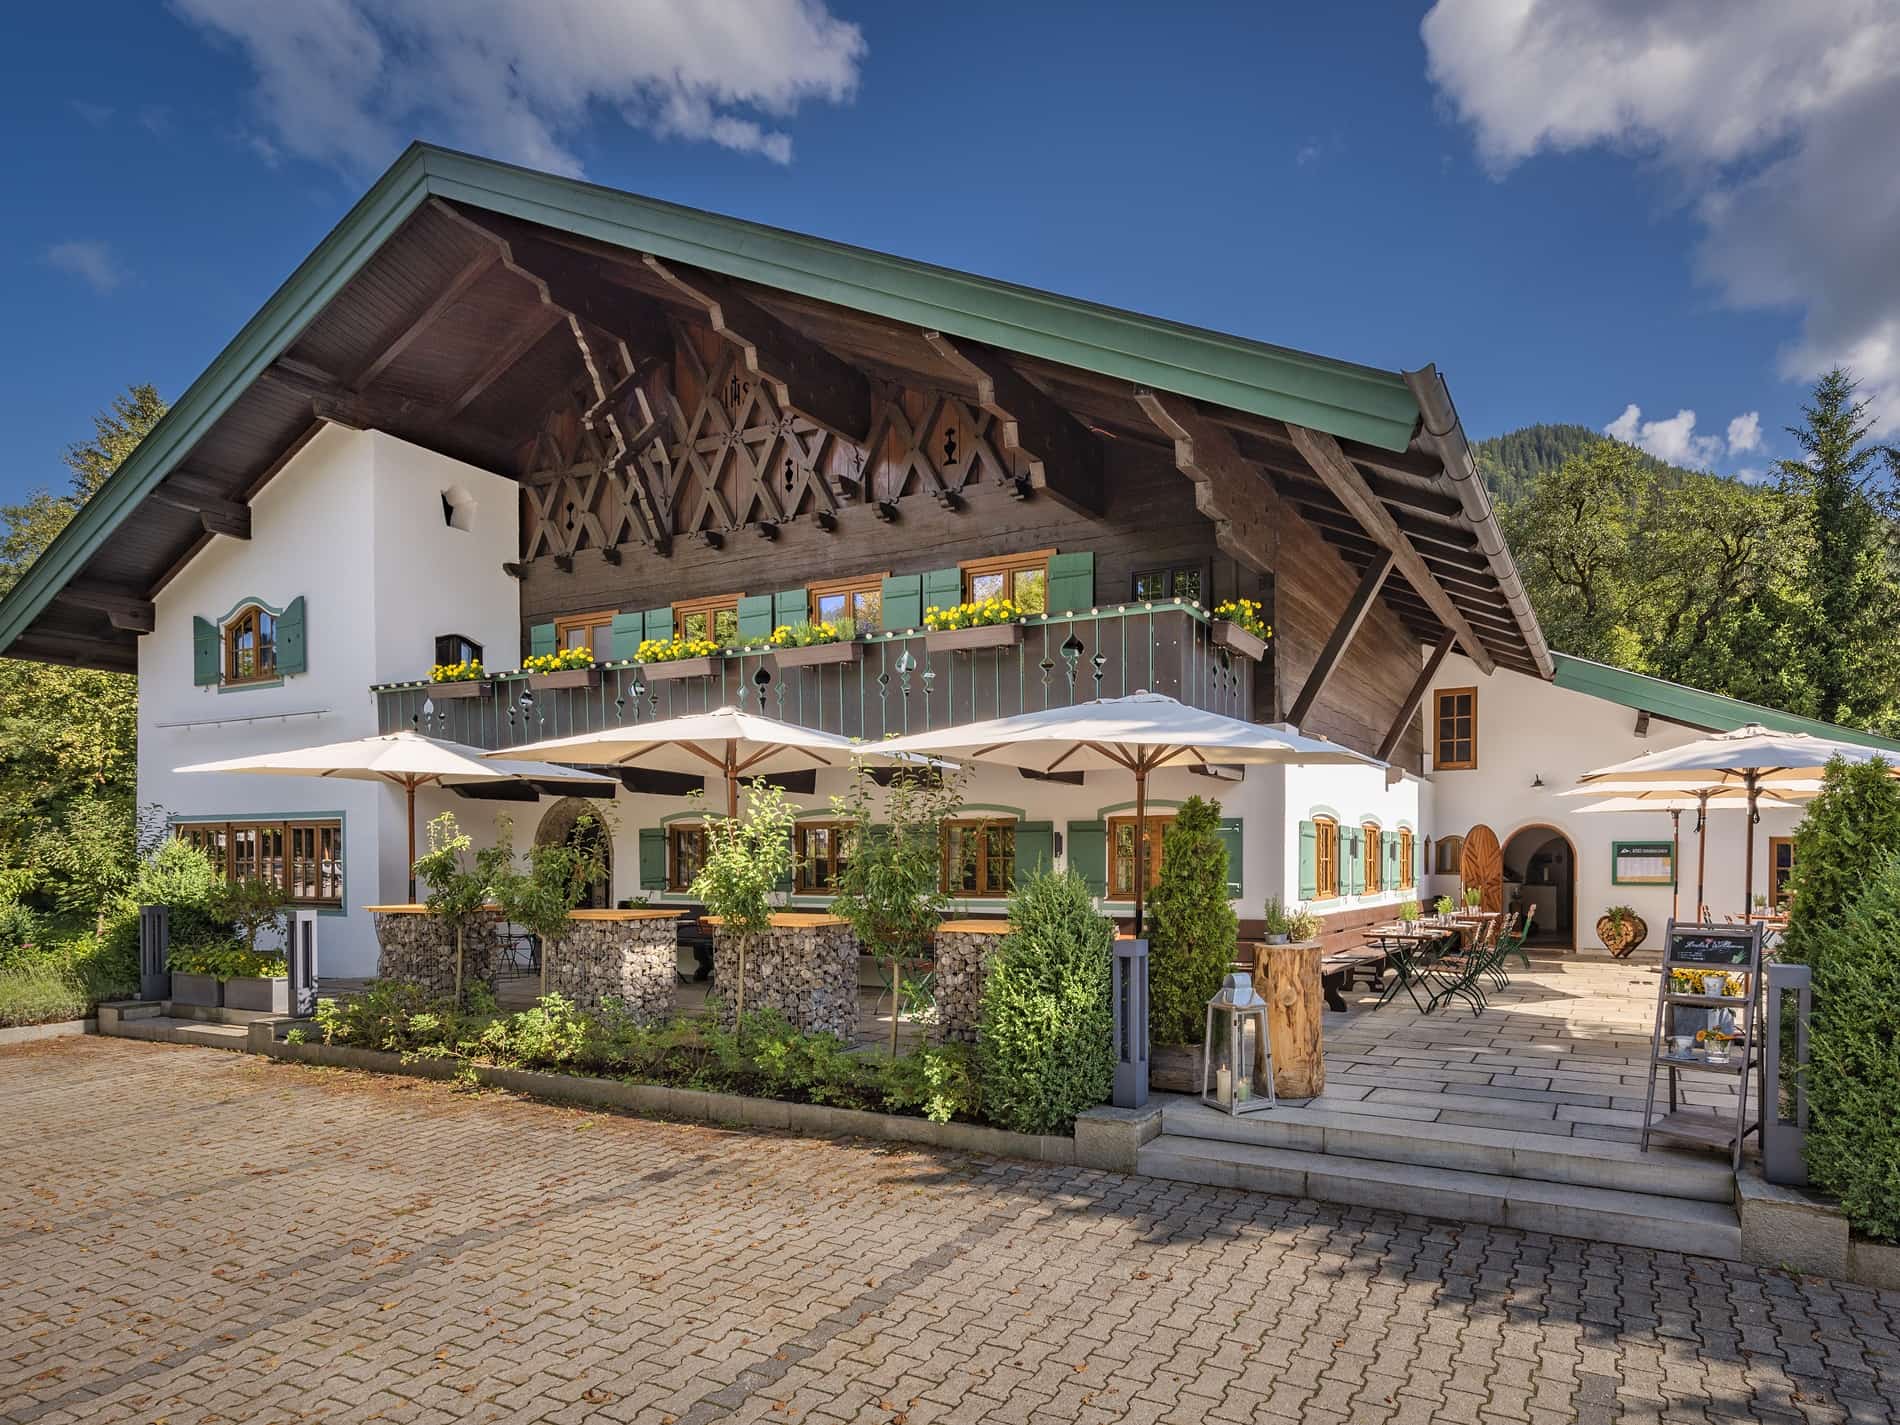 Alperie Restaurant und Alpengarten